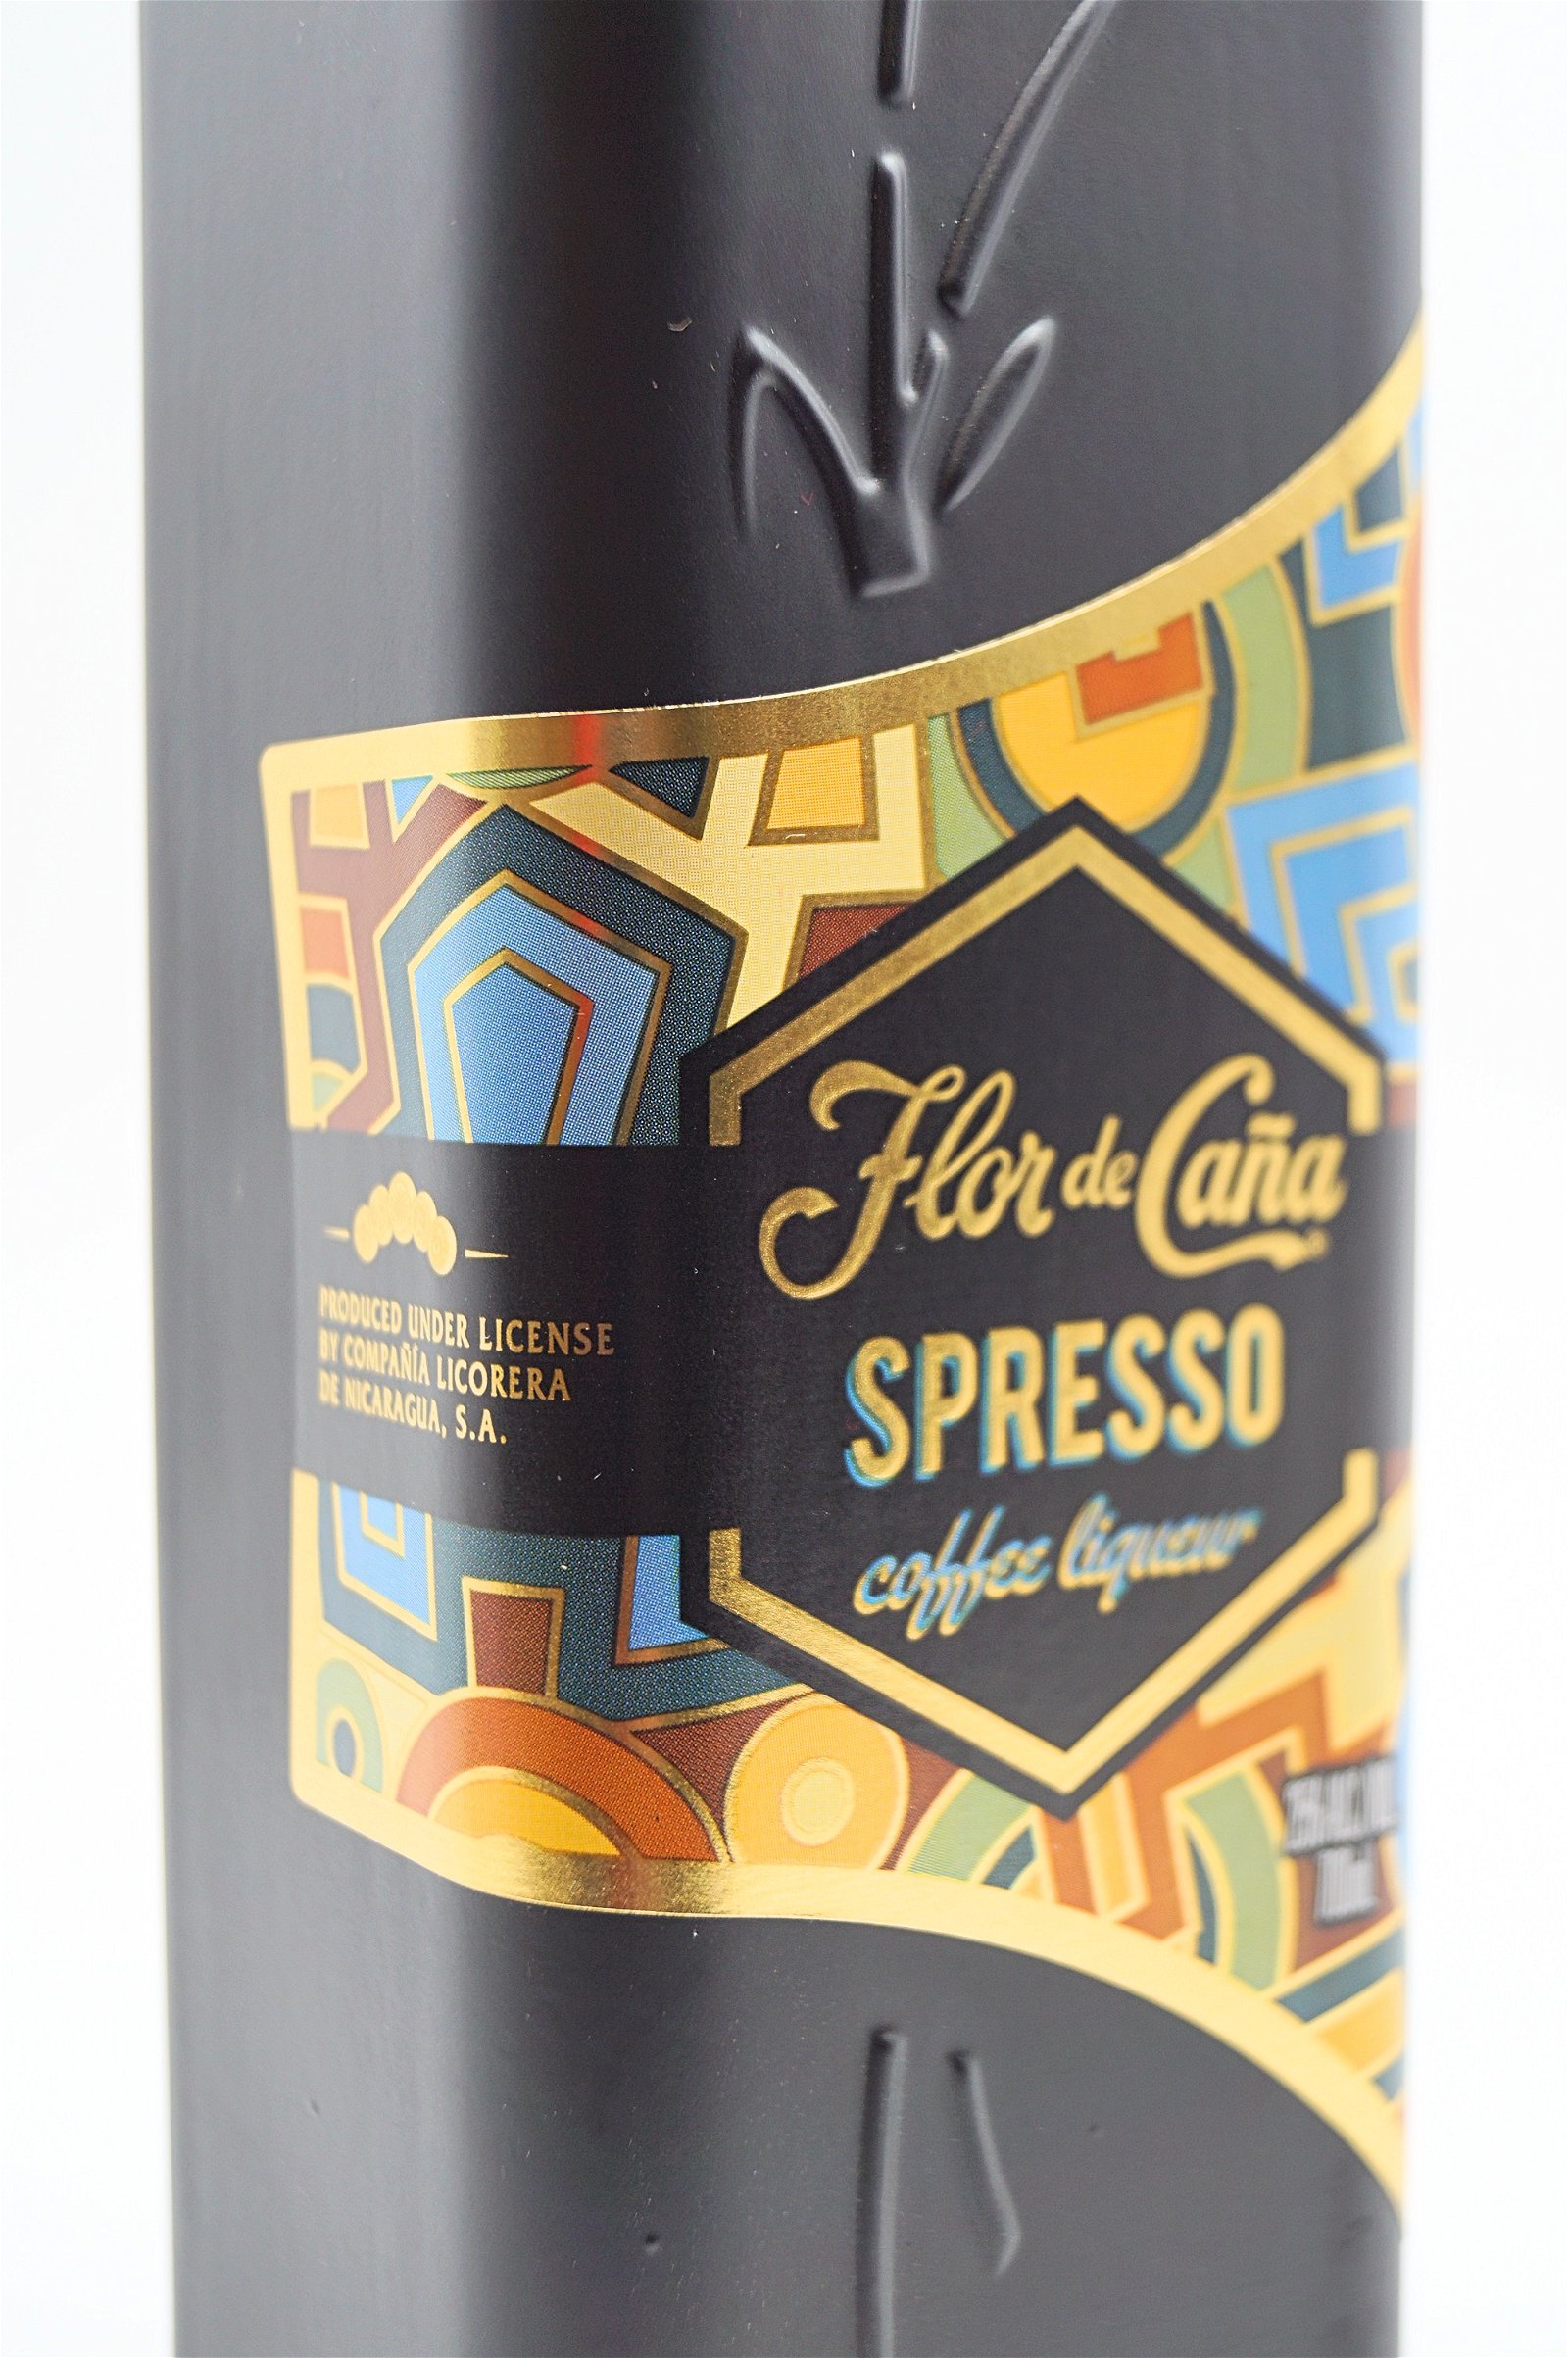 Flor de Cana Spresso Coffee Liqueur